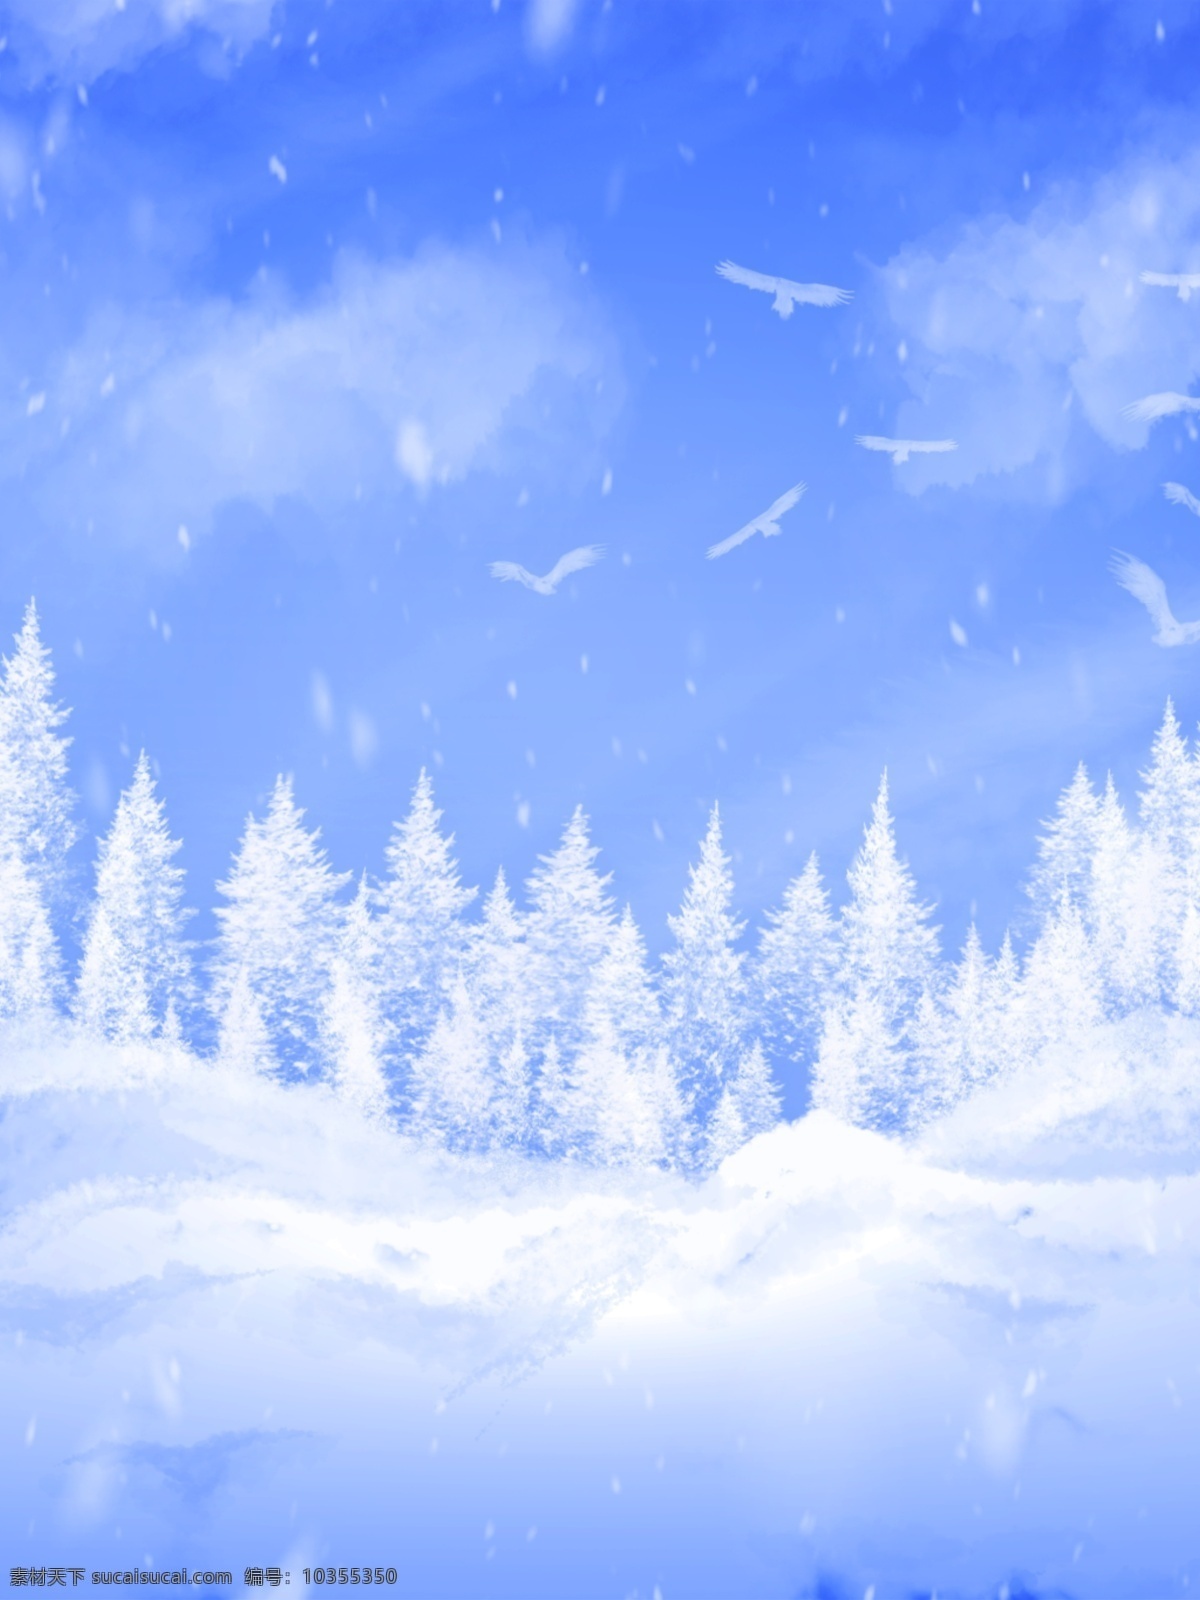 纯 原创 手绘 小 清新 冬天 飘 雪 松 树林 雪景 背景 冬天背景 蓝色背景 雪花 蓝天白云 白色背景 飞鸟背景 白色树林 下雪背景 飘雪背景 雪地背景 雪景背景